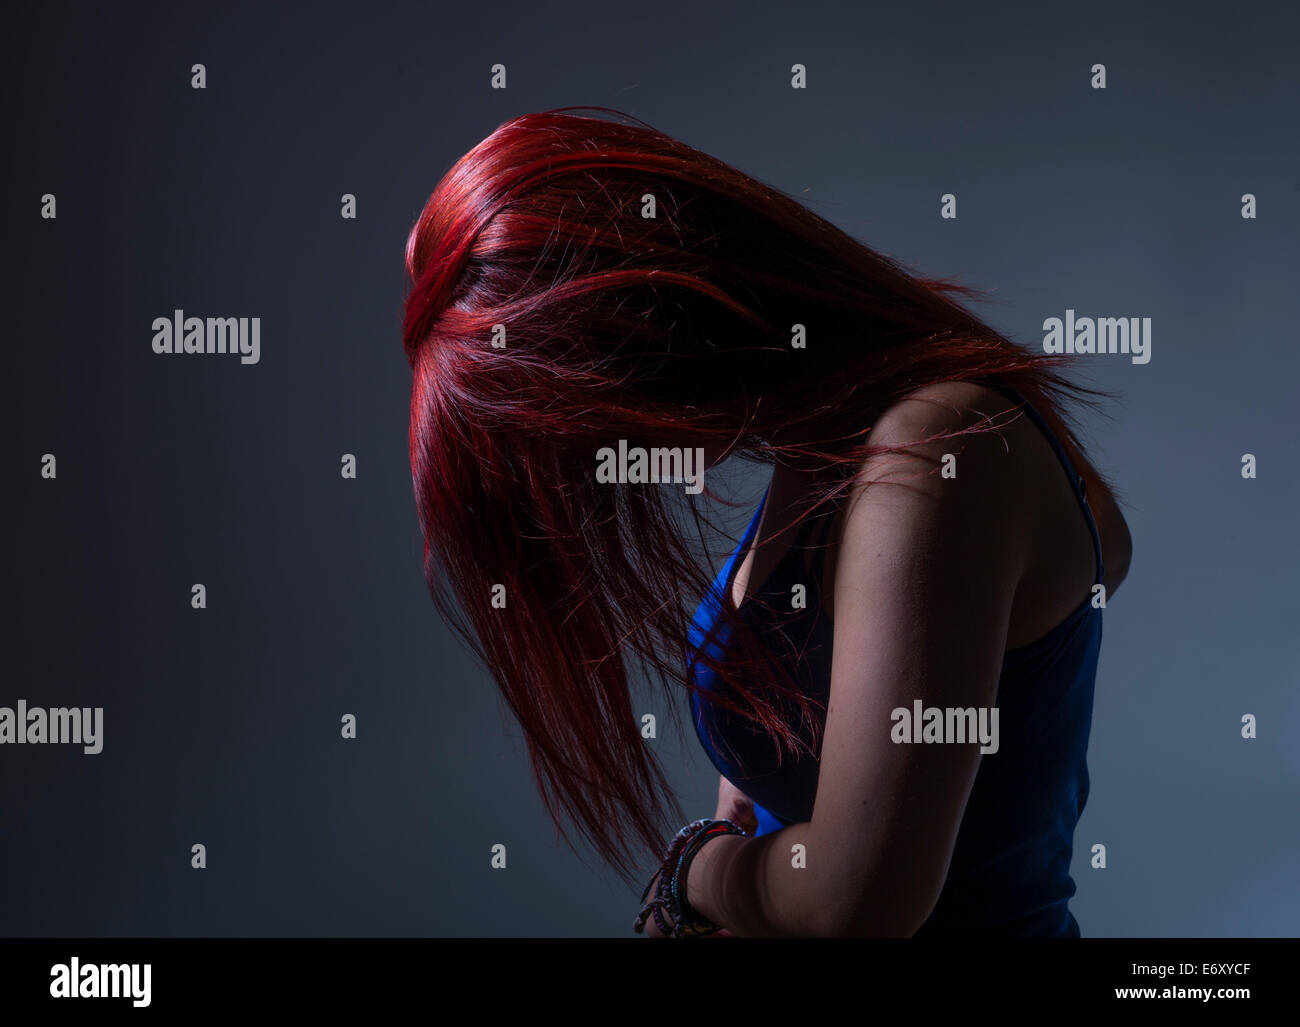 Traurigkeit / Depression: ein junge Frau Teenager-Mädchen im Profil mit gefärbten leuchtend roten Haaren, Kopf neigte verdecken ihr Gesicht, UK Stockfoto